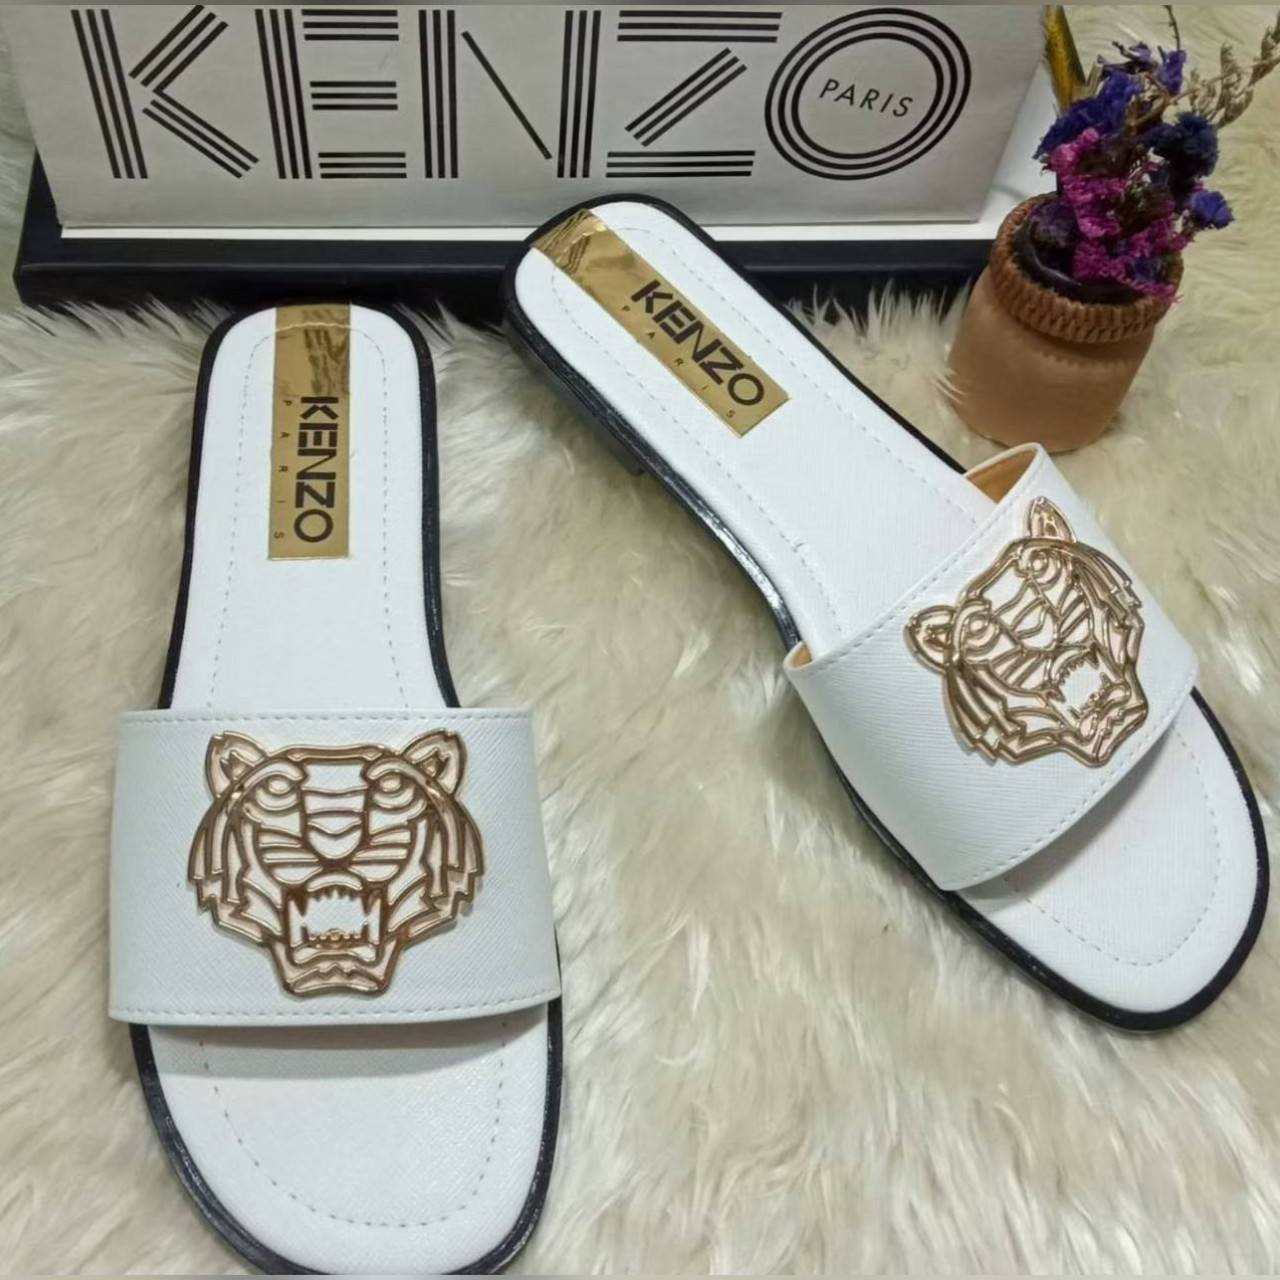 รองเท้า ไซส์ 36- 44 ส้นเตี้ย ลายเสือ KenZO ออกแบบน่ารัก สีสวย มีสไตล์ คะ